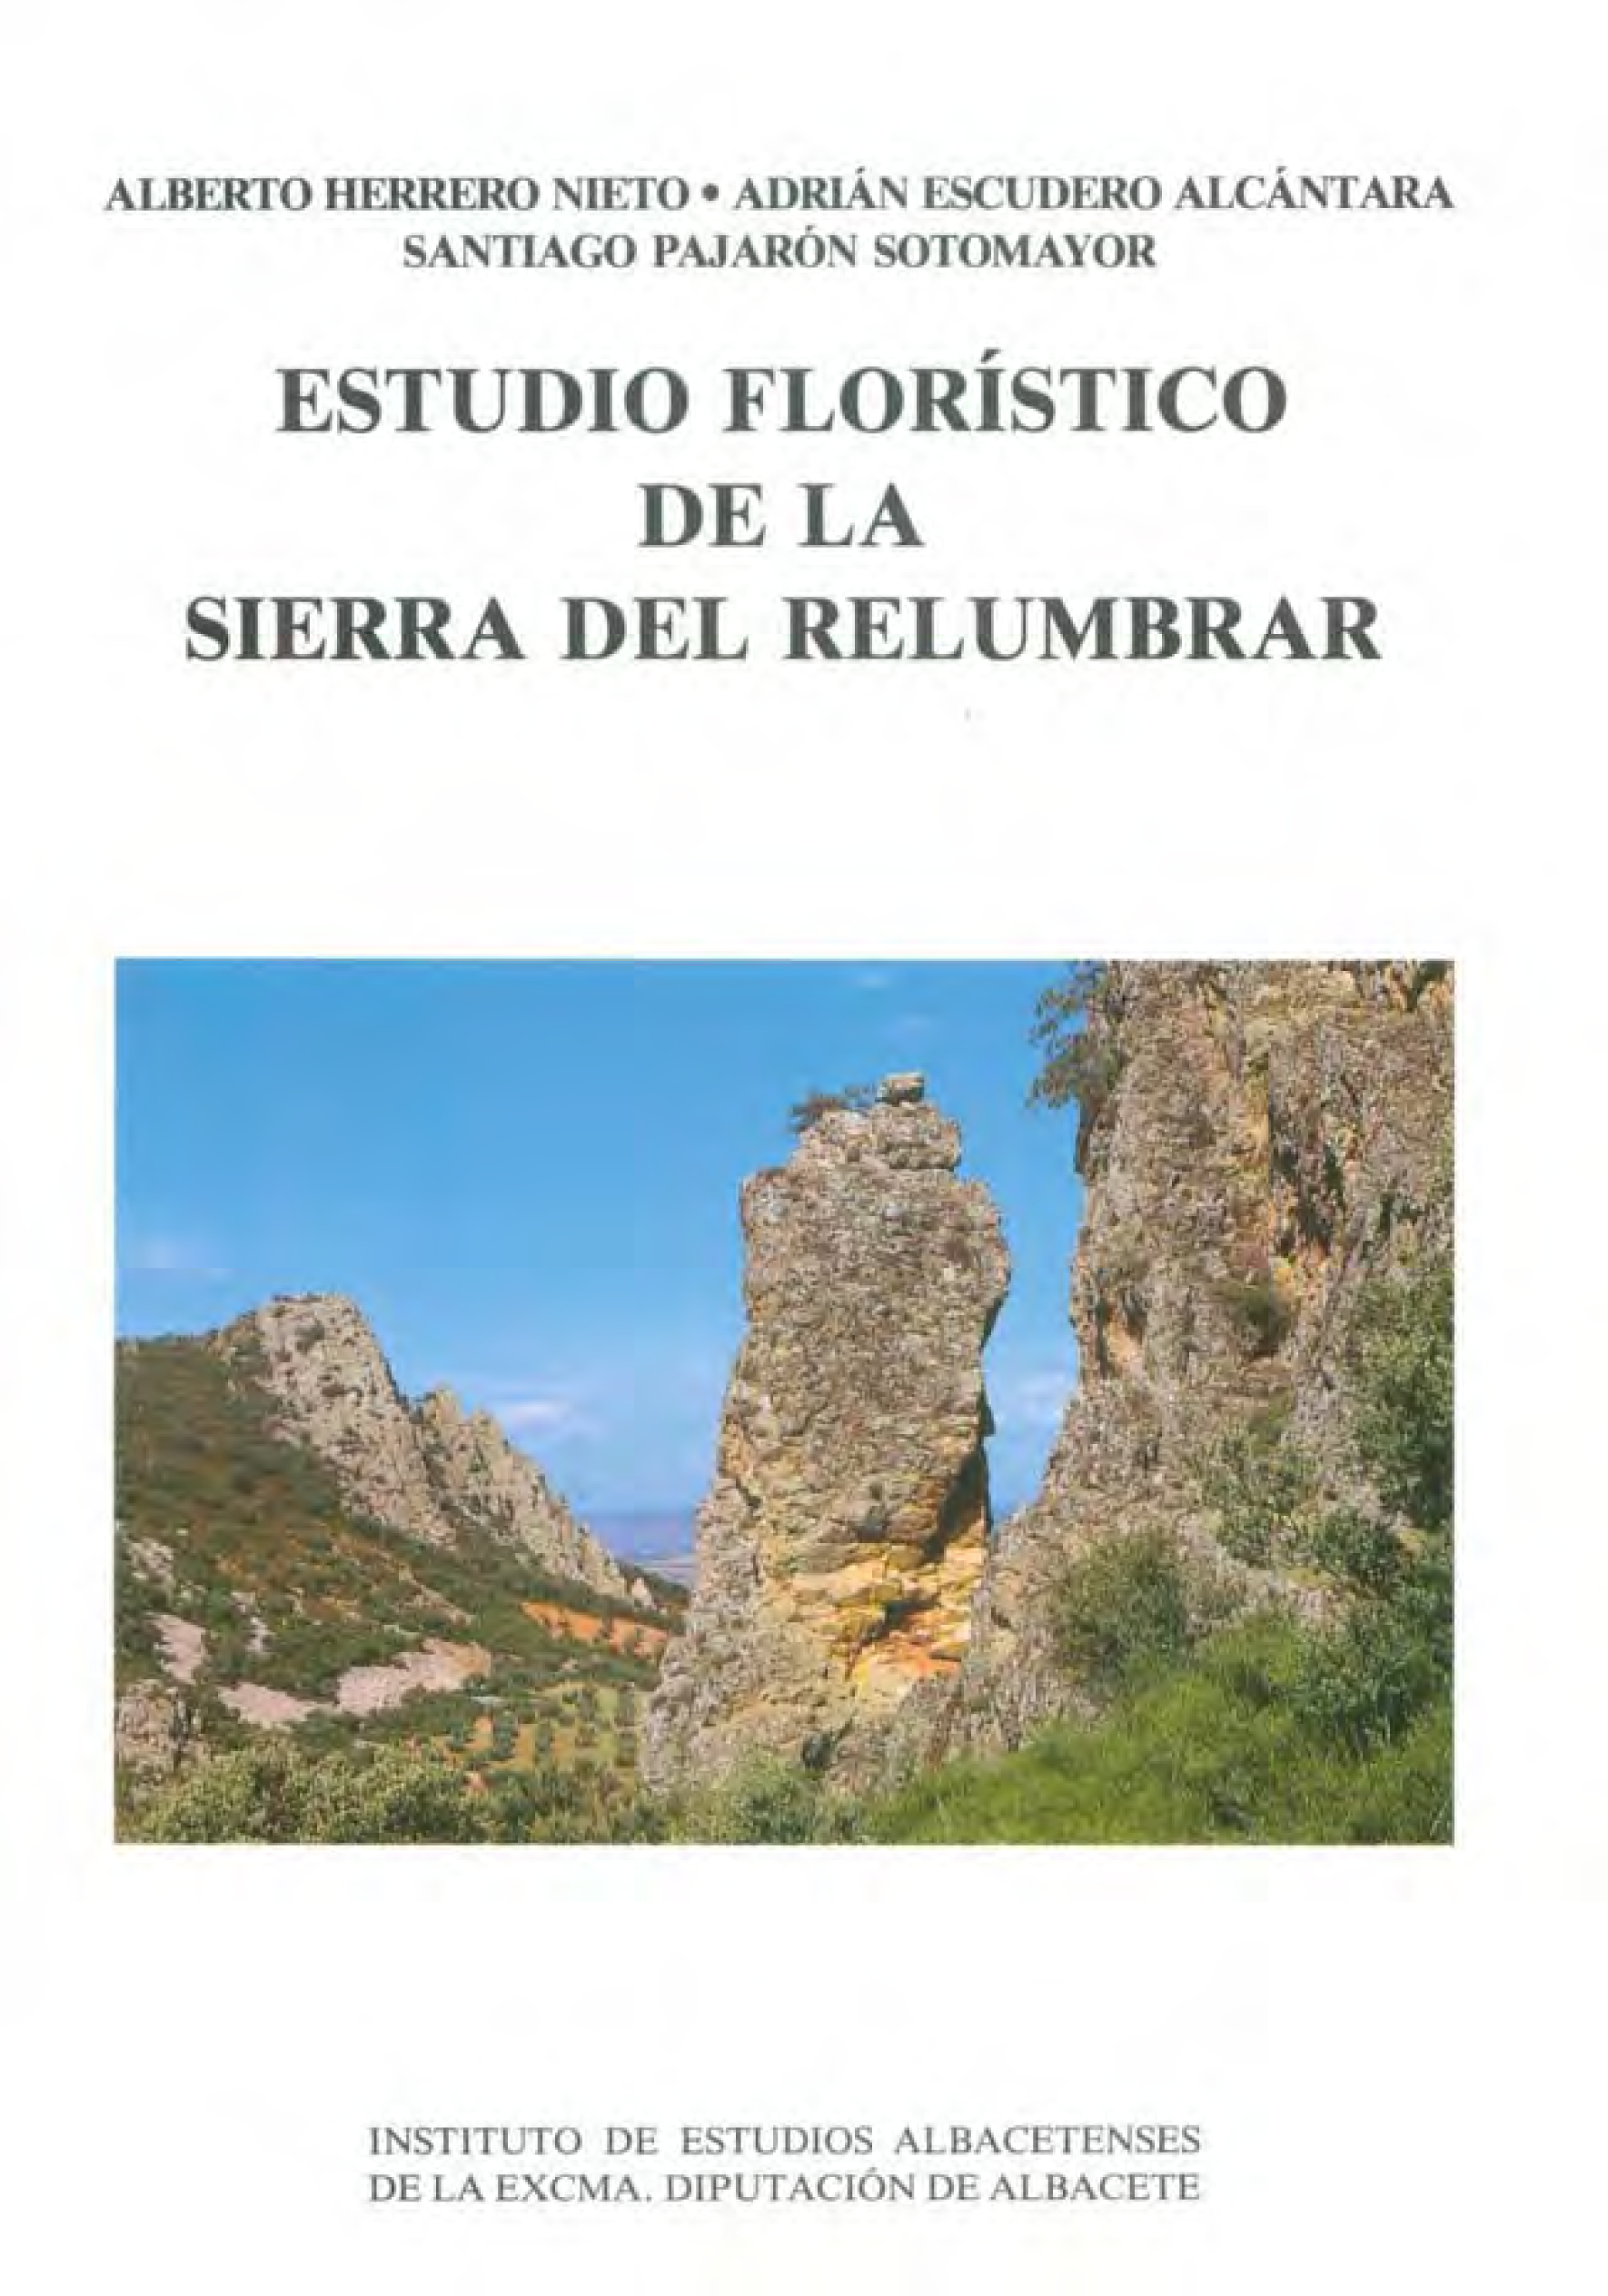 Imagen de portada del libro Estudio florístico de la Sierra del Relumbrar